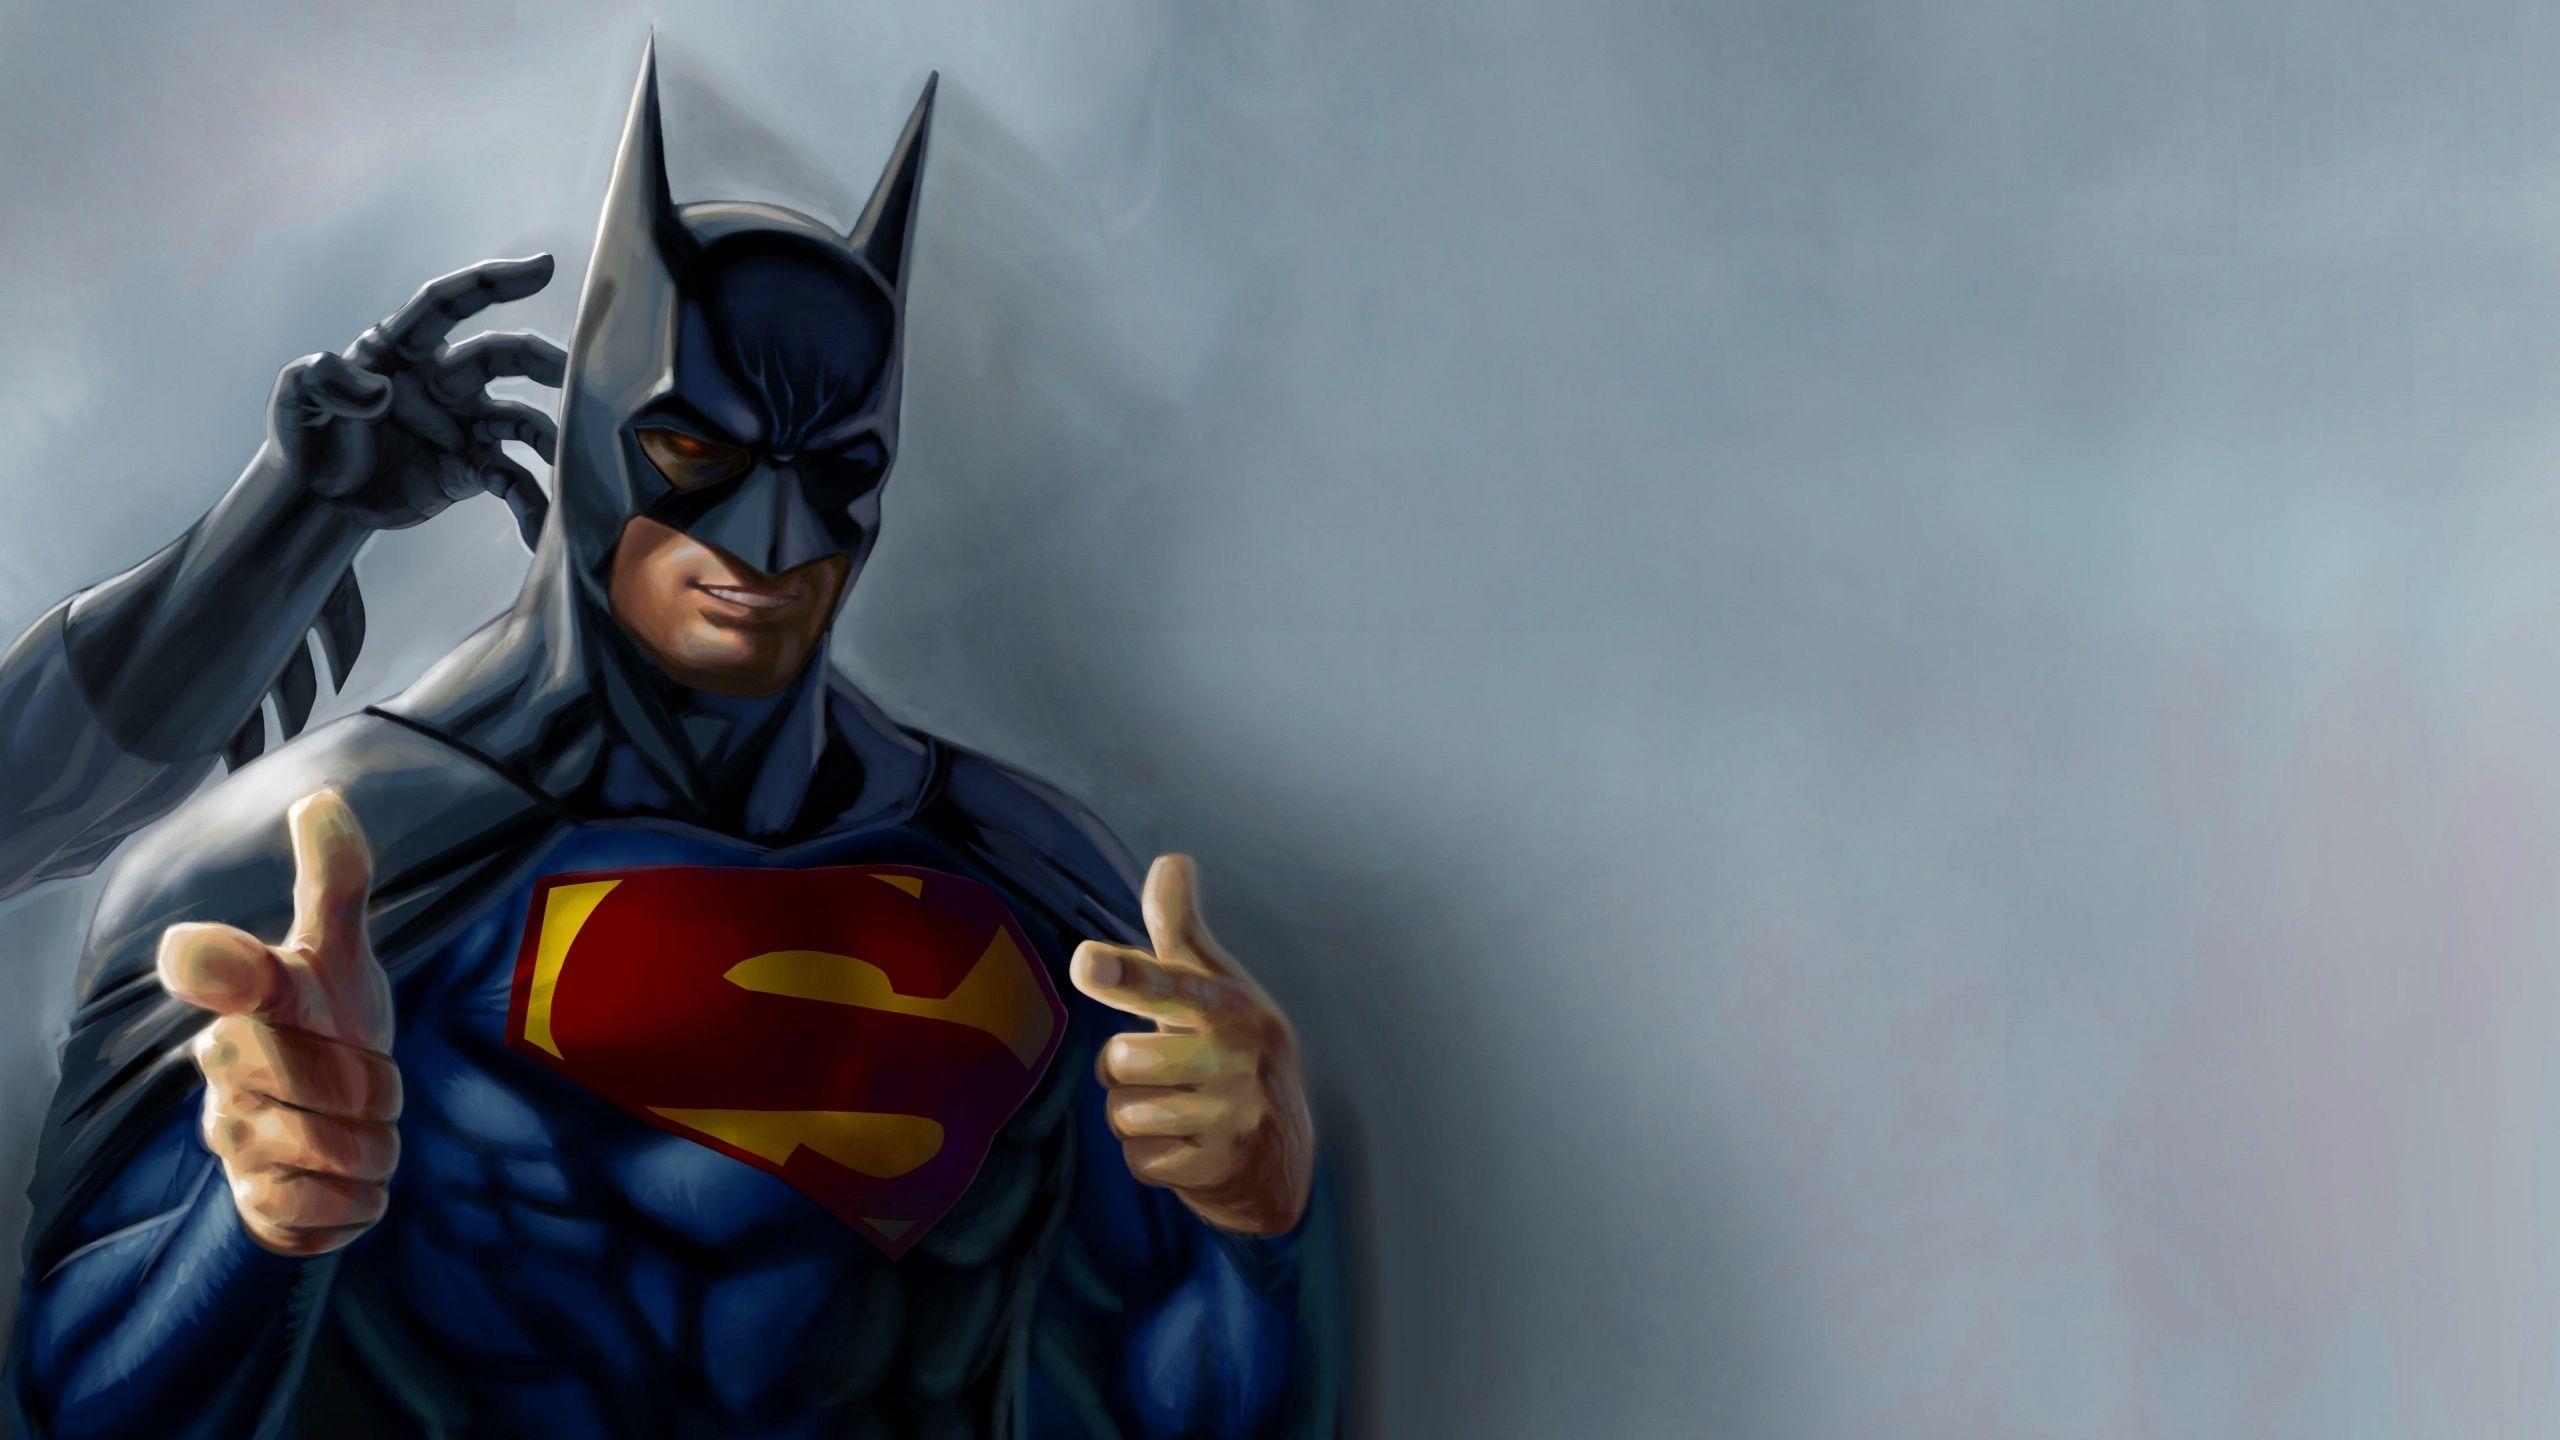 Funny Superman Wearing Batman Mask Wallpaper. Comics